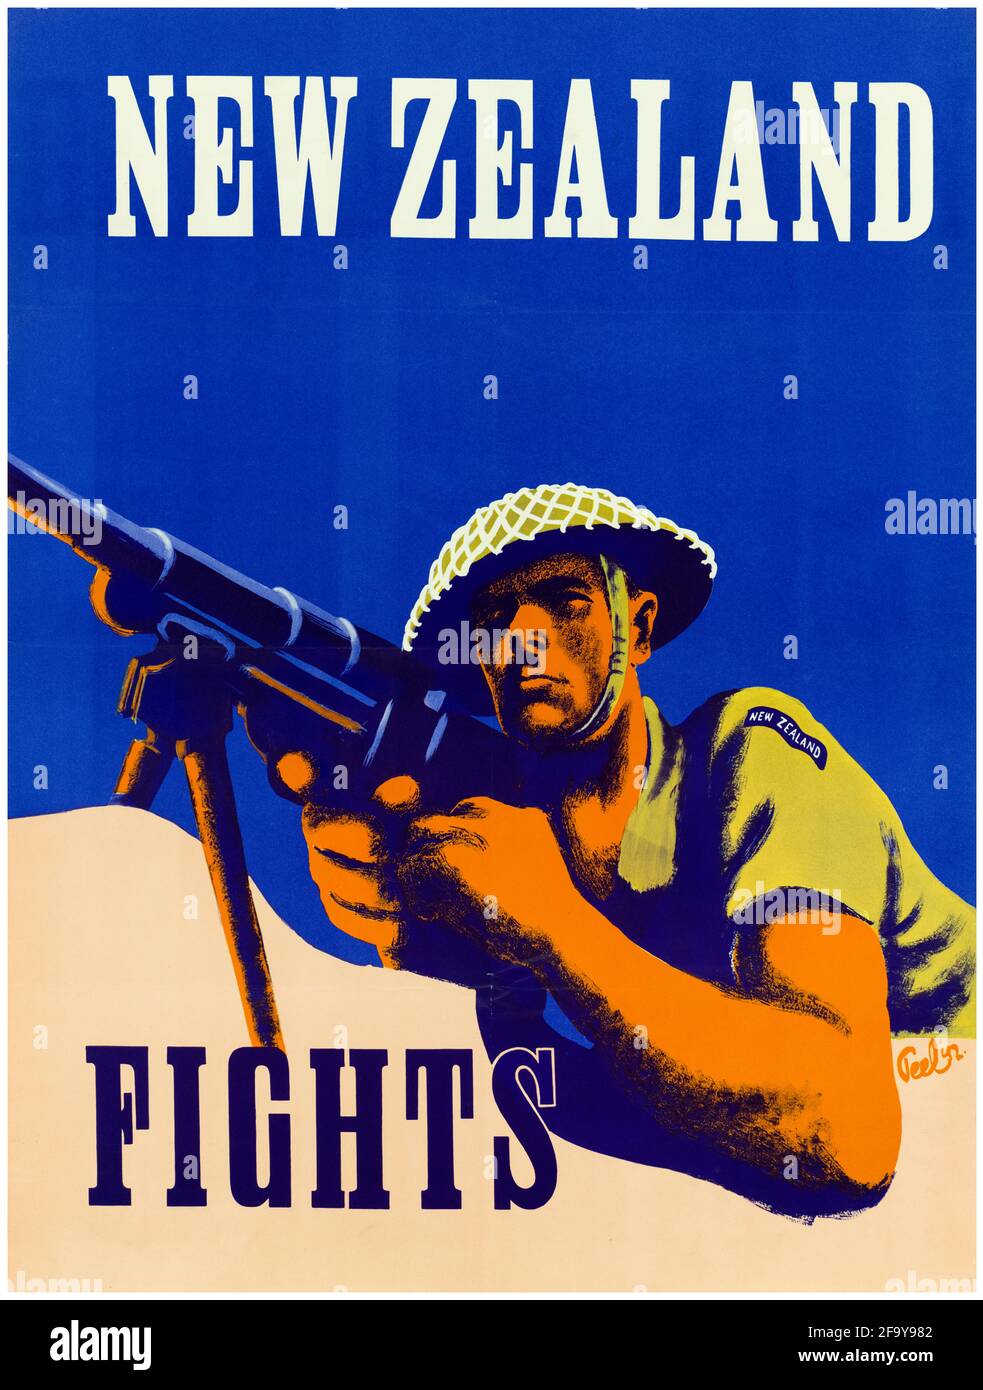 Nouvelle-Zélande, affiche de motivation de la Seconde Guerre mondiale, New Zealand Fights, 1942-1945 Banque D'Images